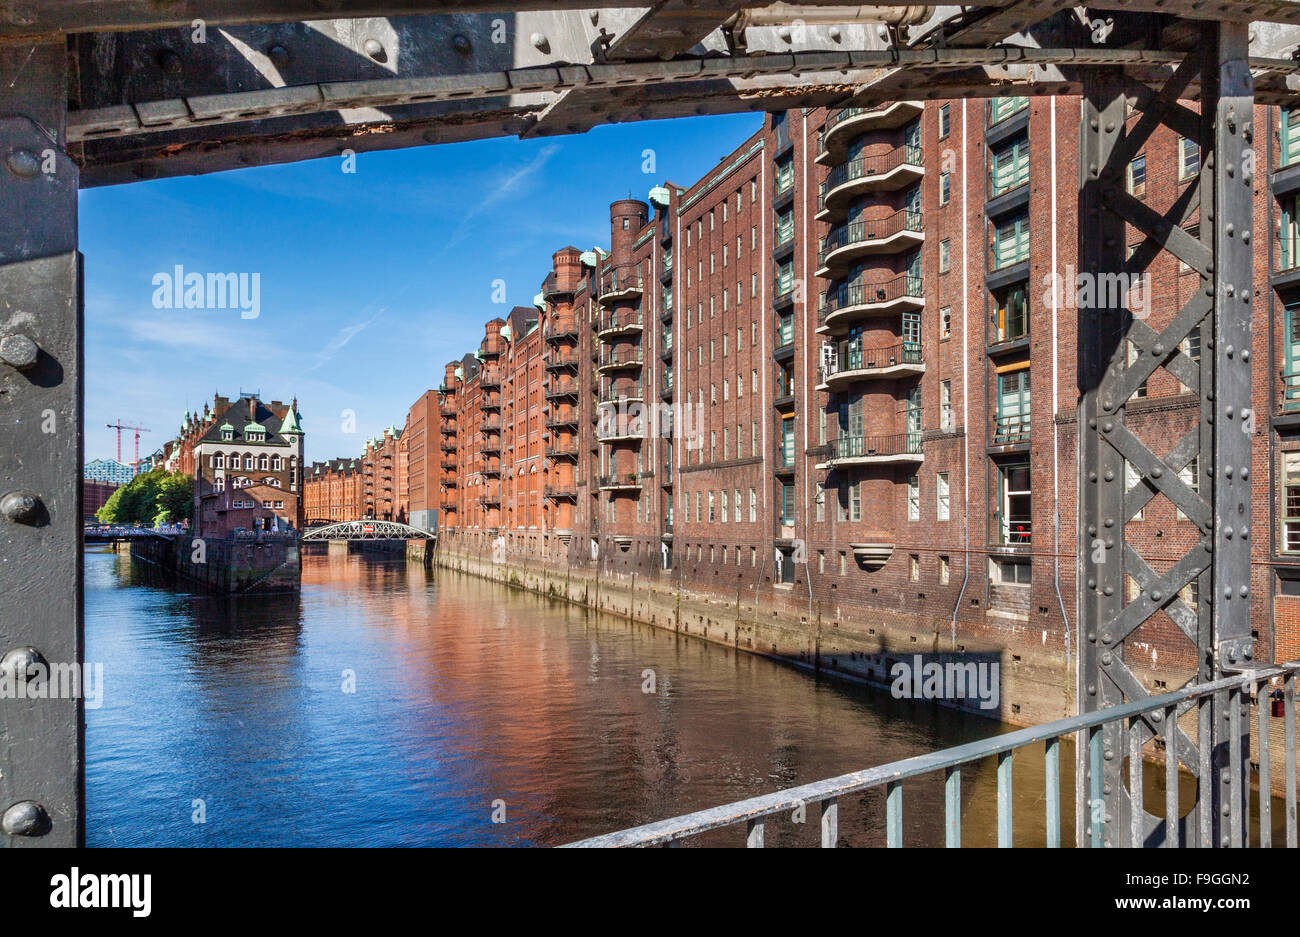 Alemania, la Ciudad Libre y Hanseática de Hamburgo, las bodegas de ladrillos rojos de estilo neogótico de la Speicherstadt en Canal Wandrahmsfleet Foto de stock